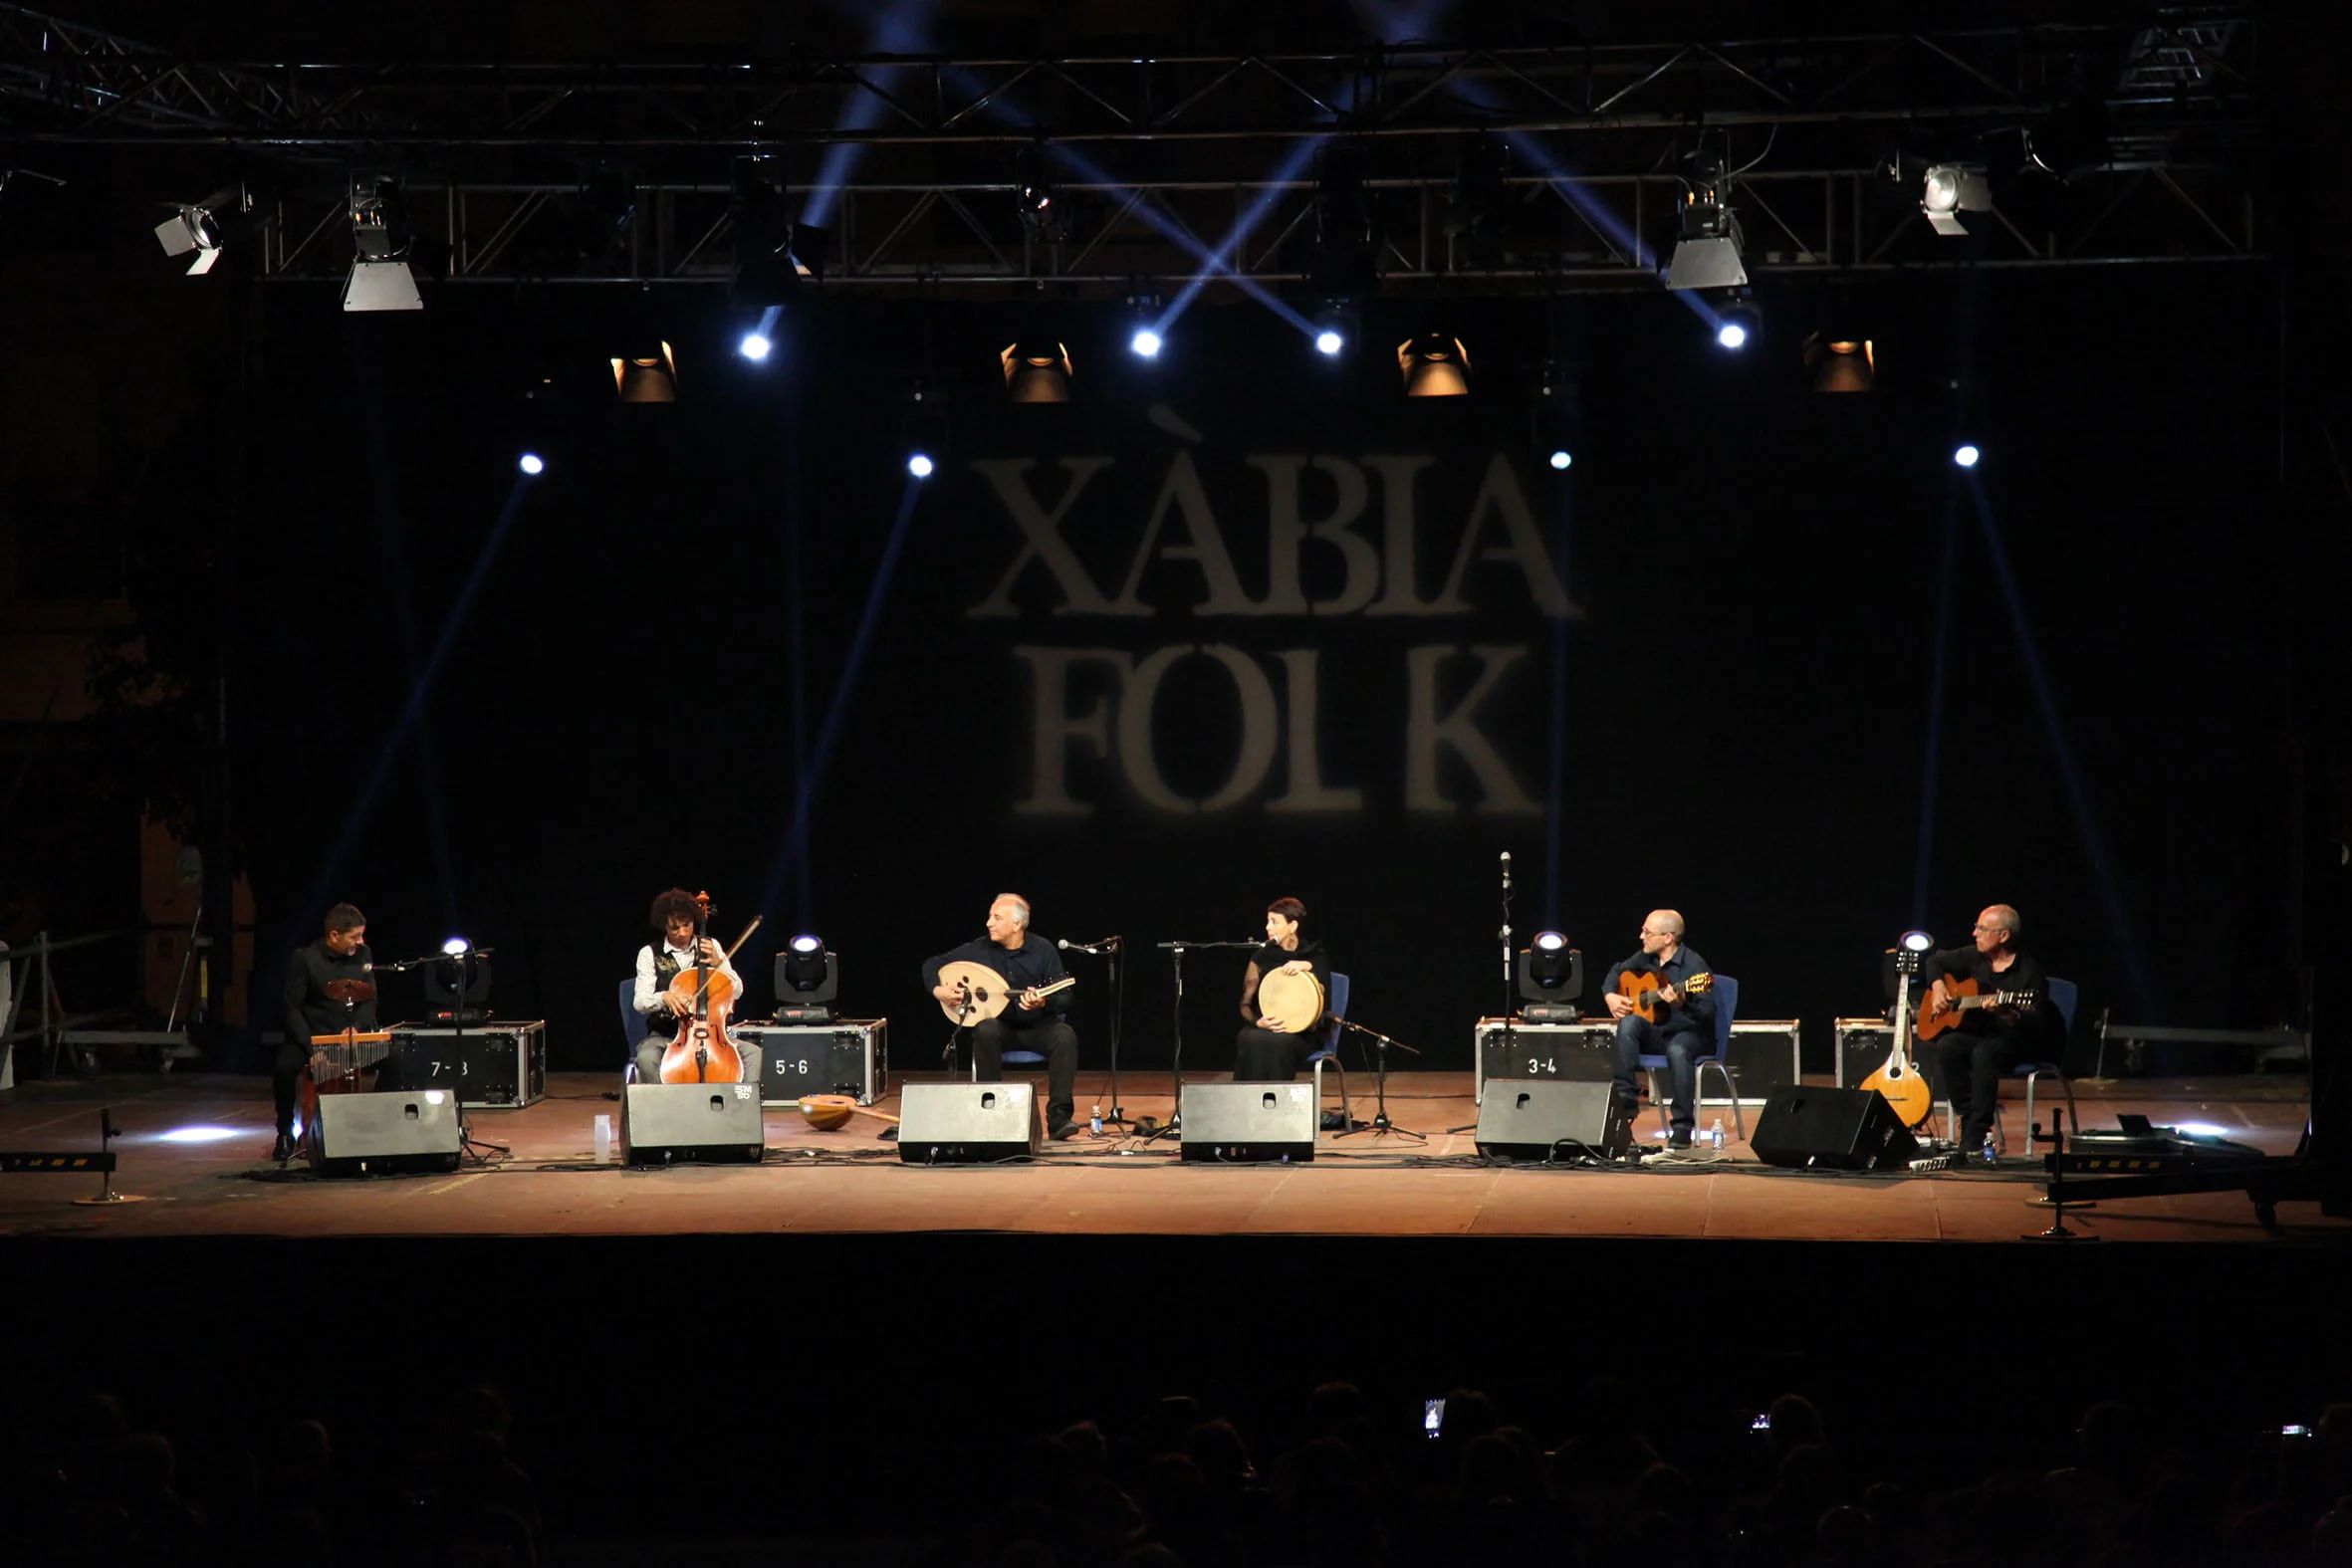 Actuación en el Festival de Xàbia Folk (archivo)